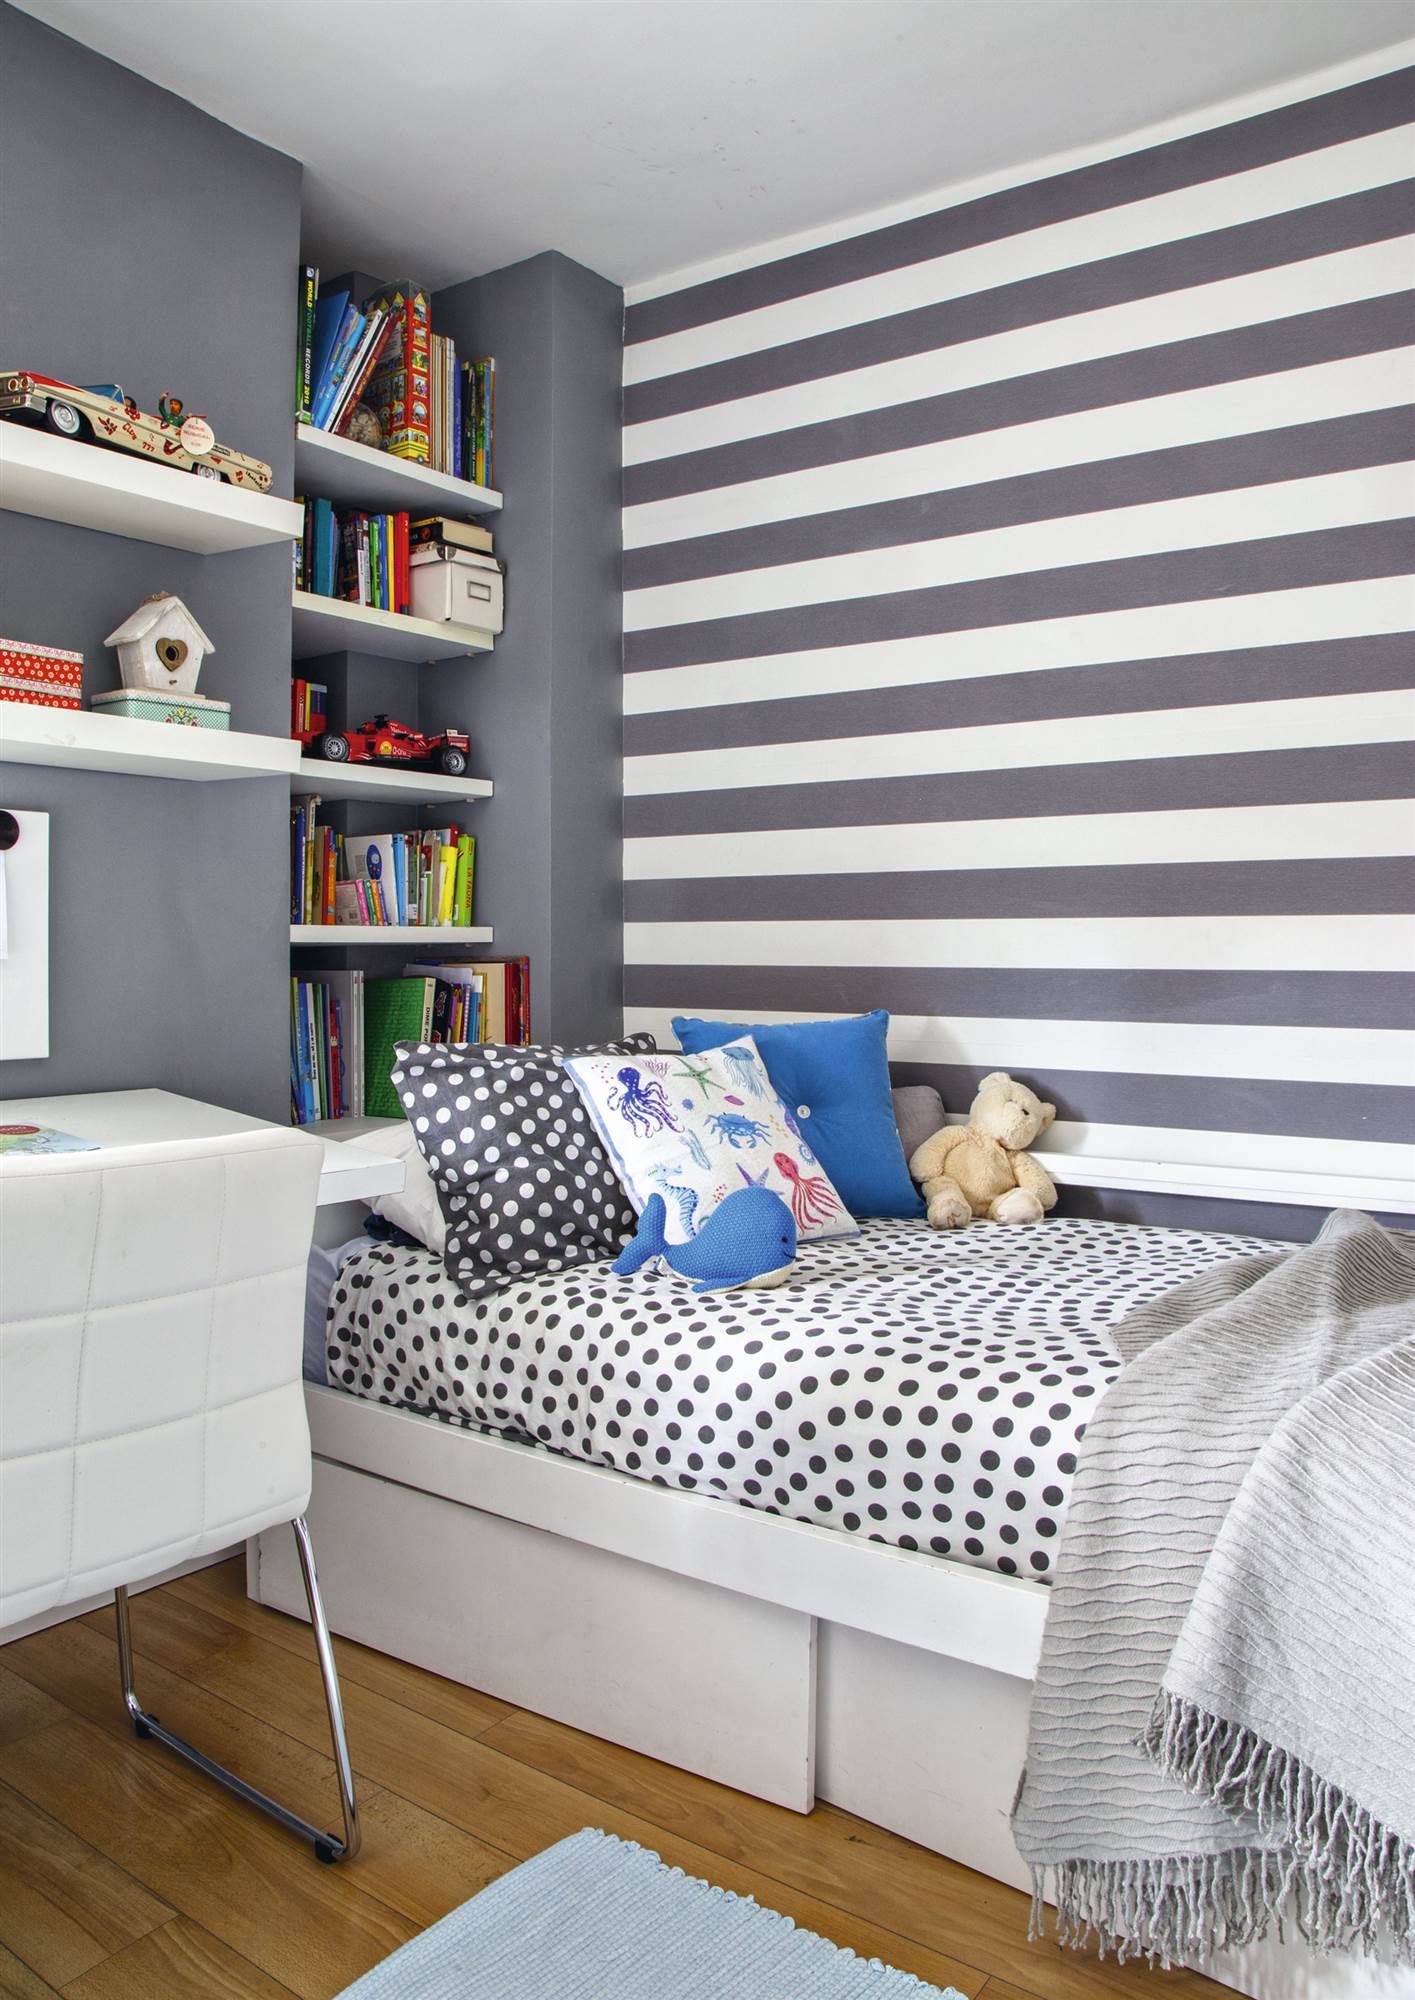 Dormitorio juvenil con papel pintado a rayas, ropa de cama de topos y hueco en la pared con estantes.